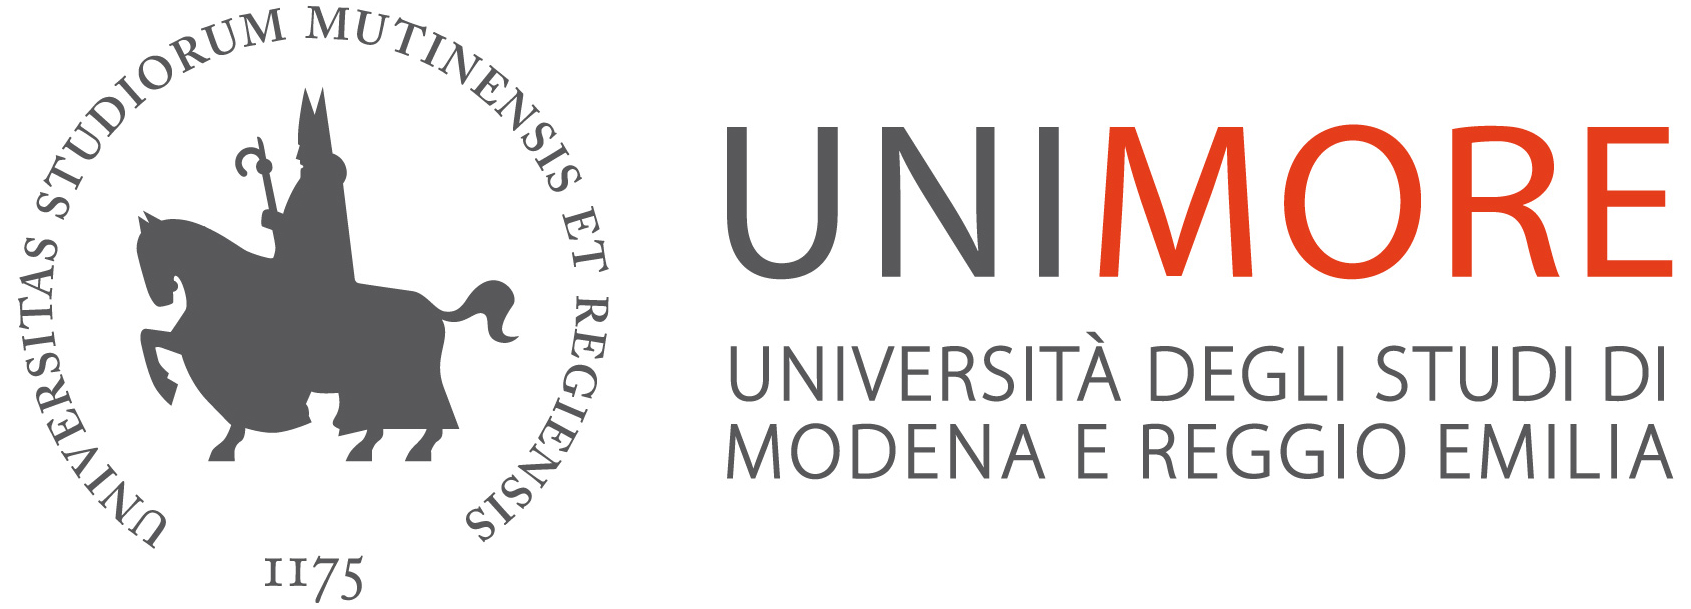 Logo UNIMORE  Università degli Studi di Modena e Reggio Emilia